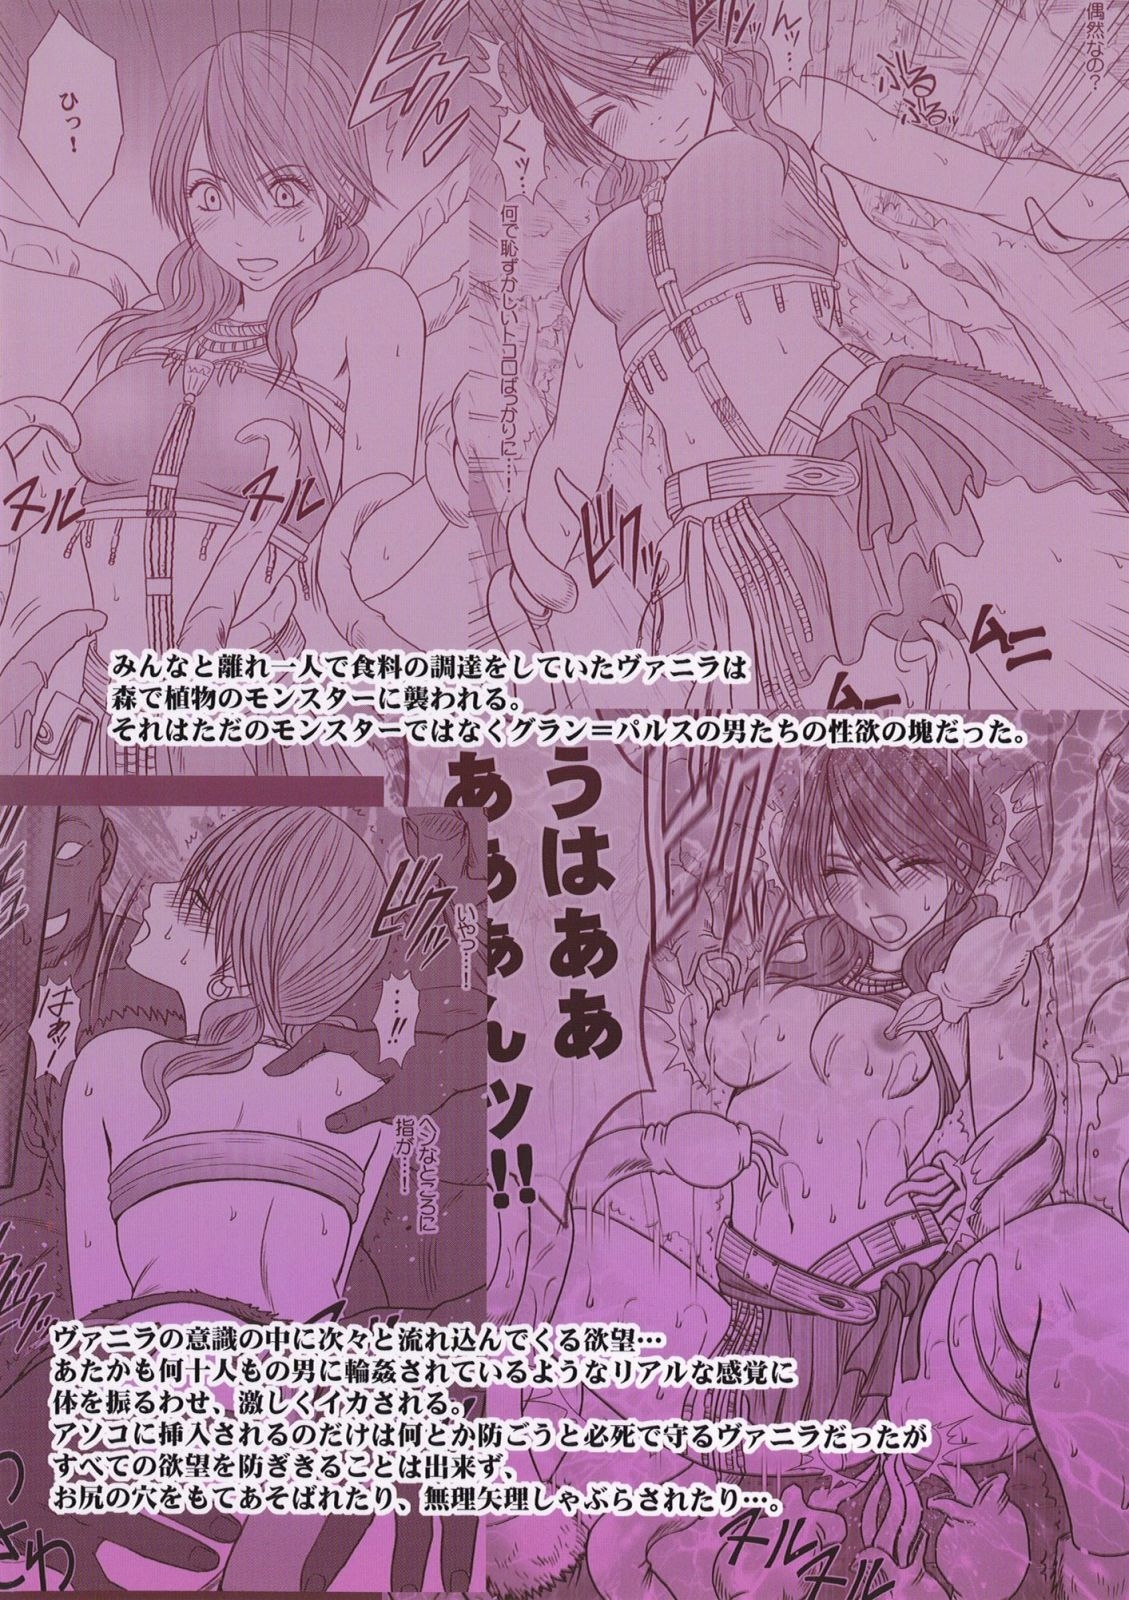 [Crimson] Watashi wa mou Nigerarenai (Final Fantasy XIII) [English] {doujin-moe.us} 52